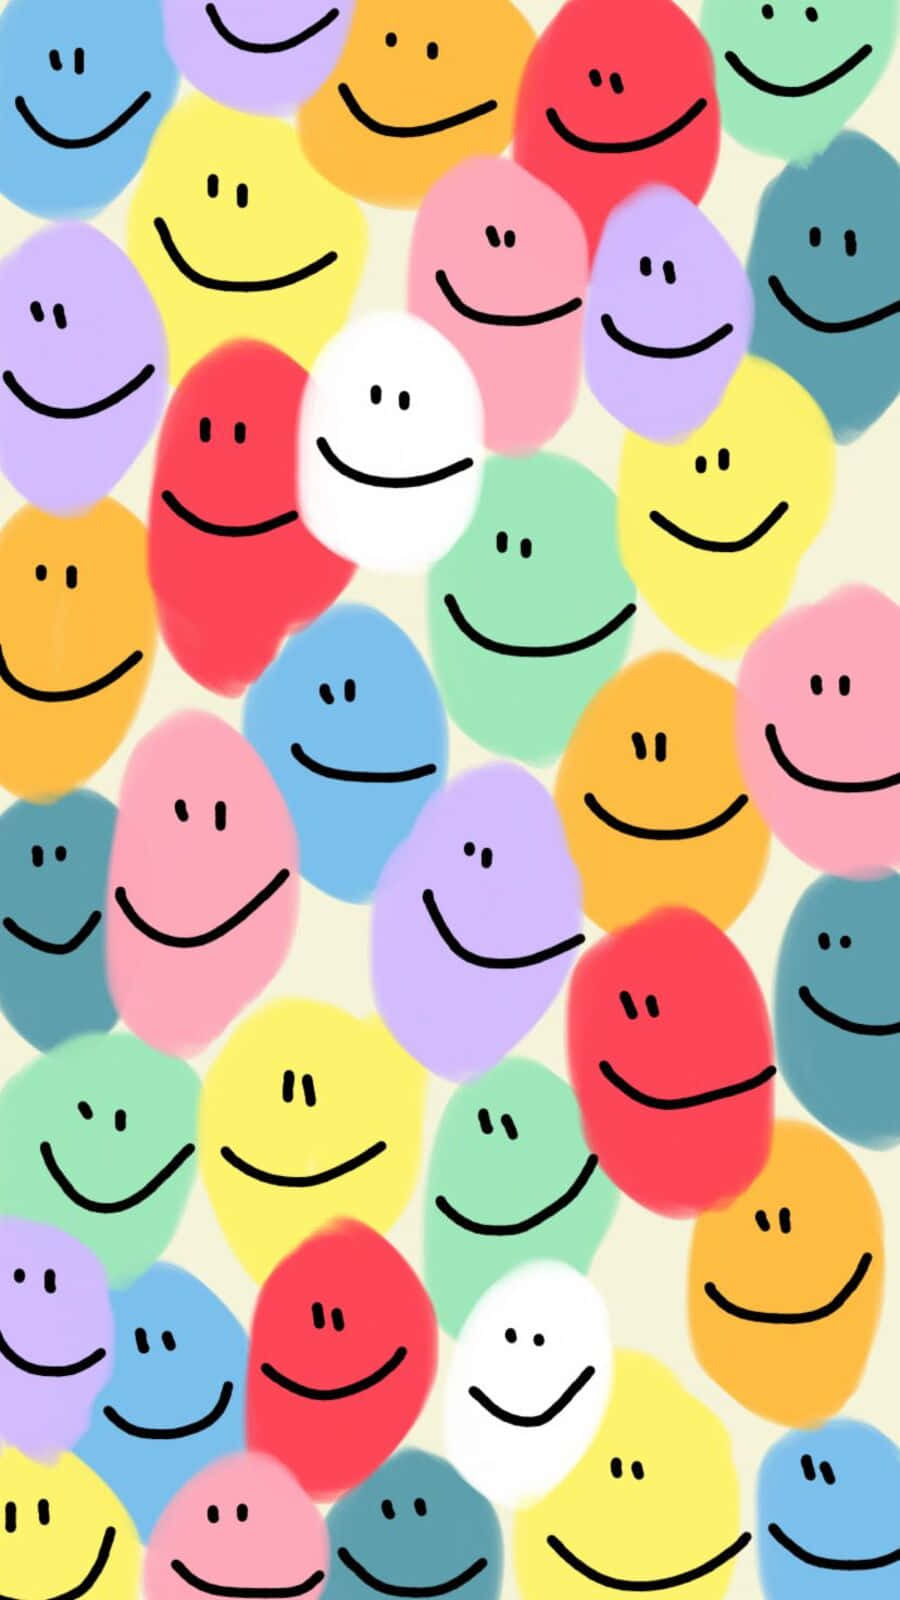 Vibrant Aesthetic Smiley Face Art Wallpaper